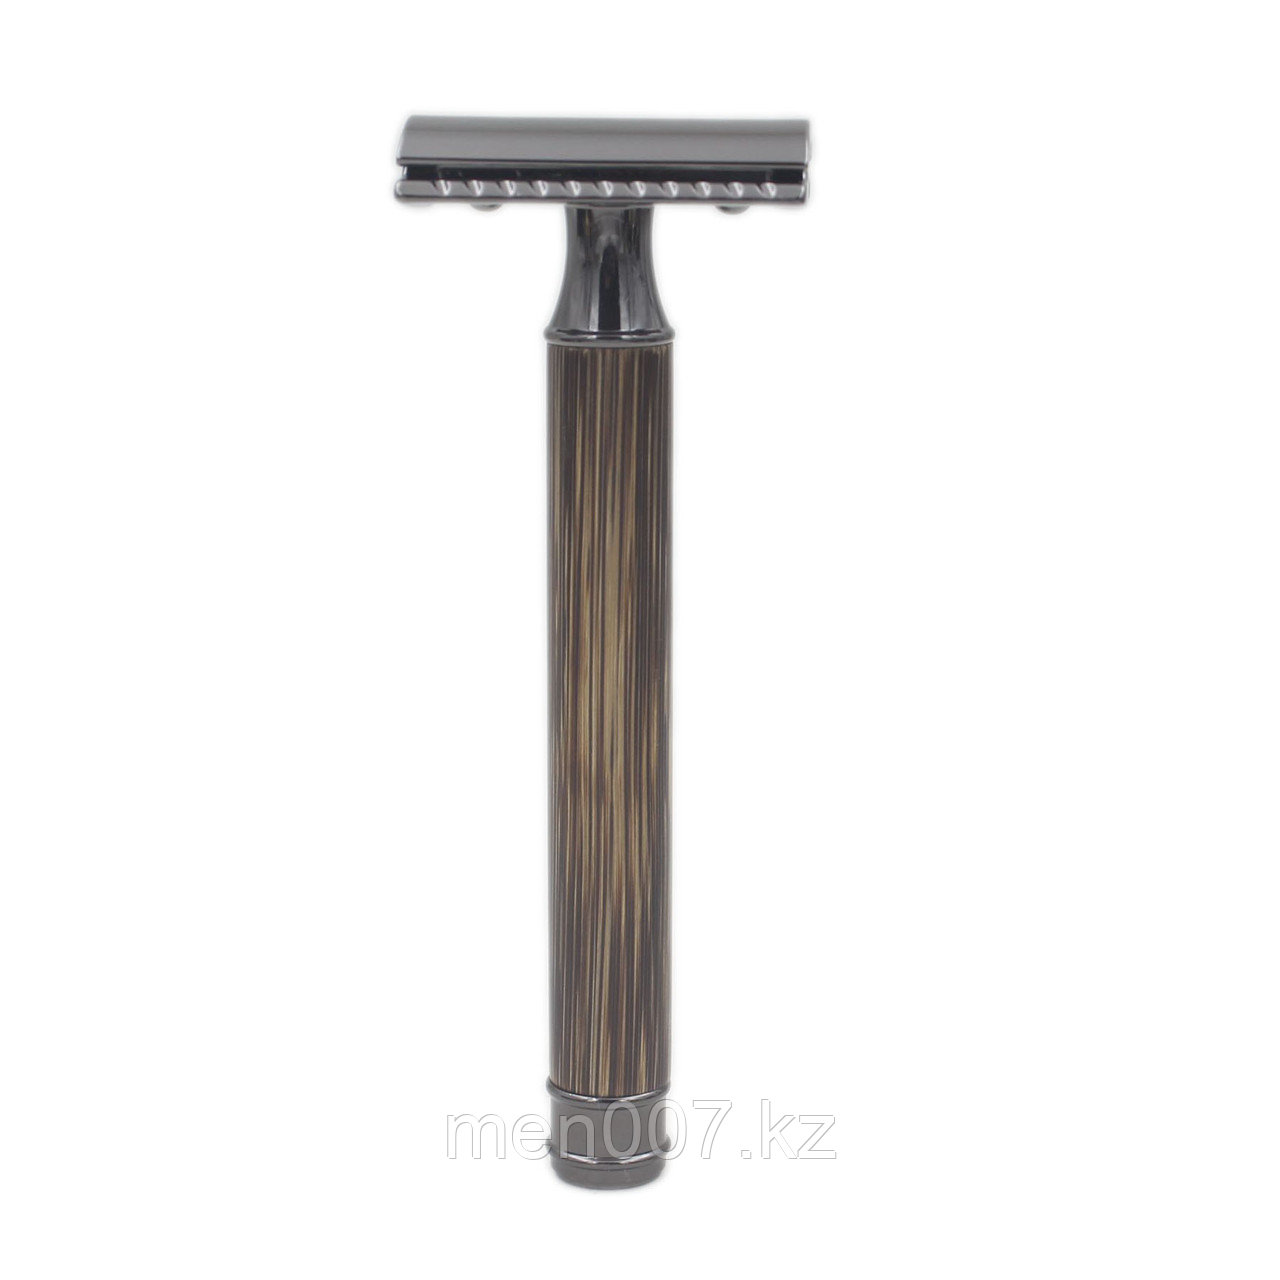 Безопасная мужская бритва Safety Razor из натурального бамбука цвет ручки может отличаться от фото